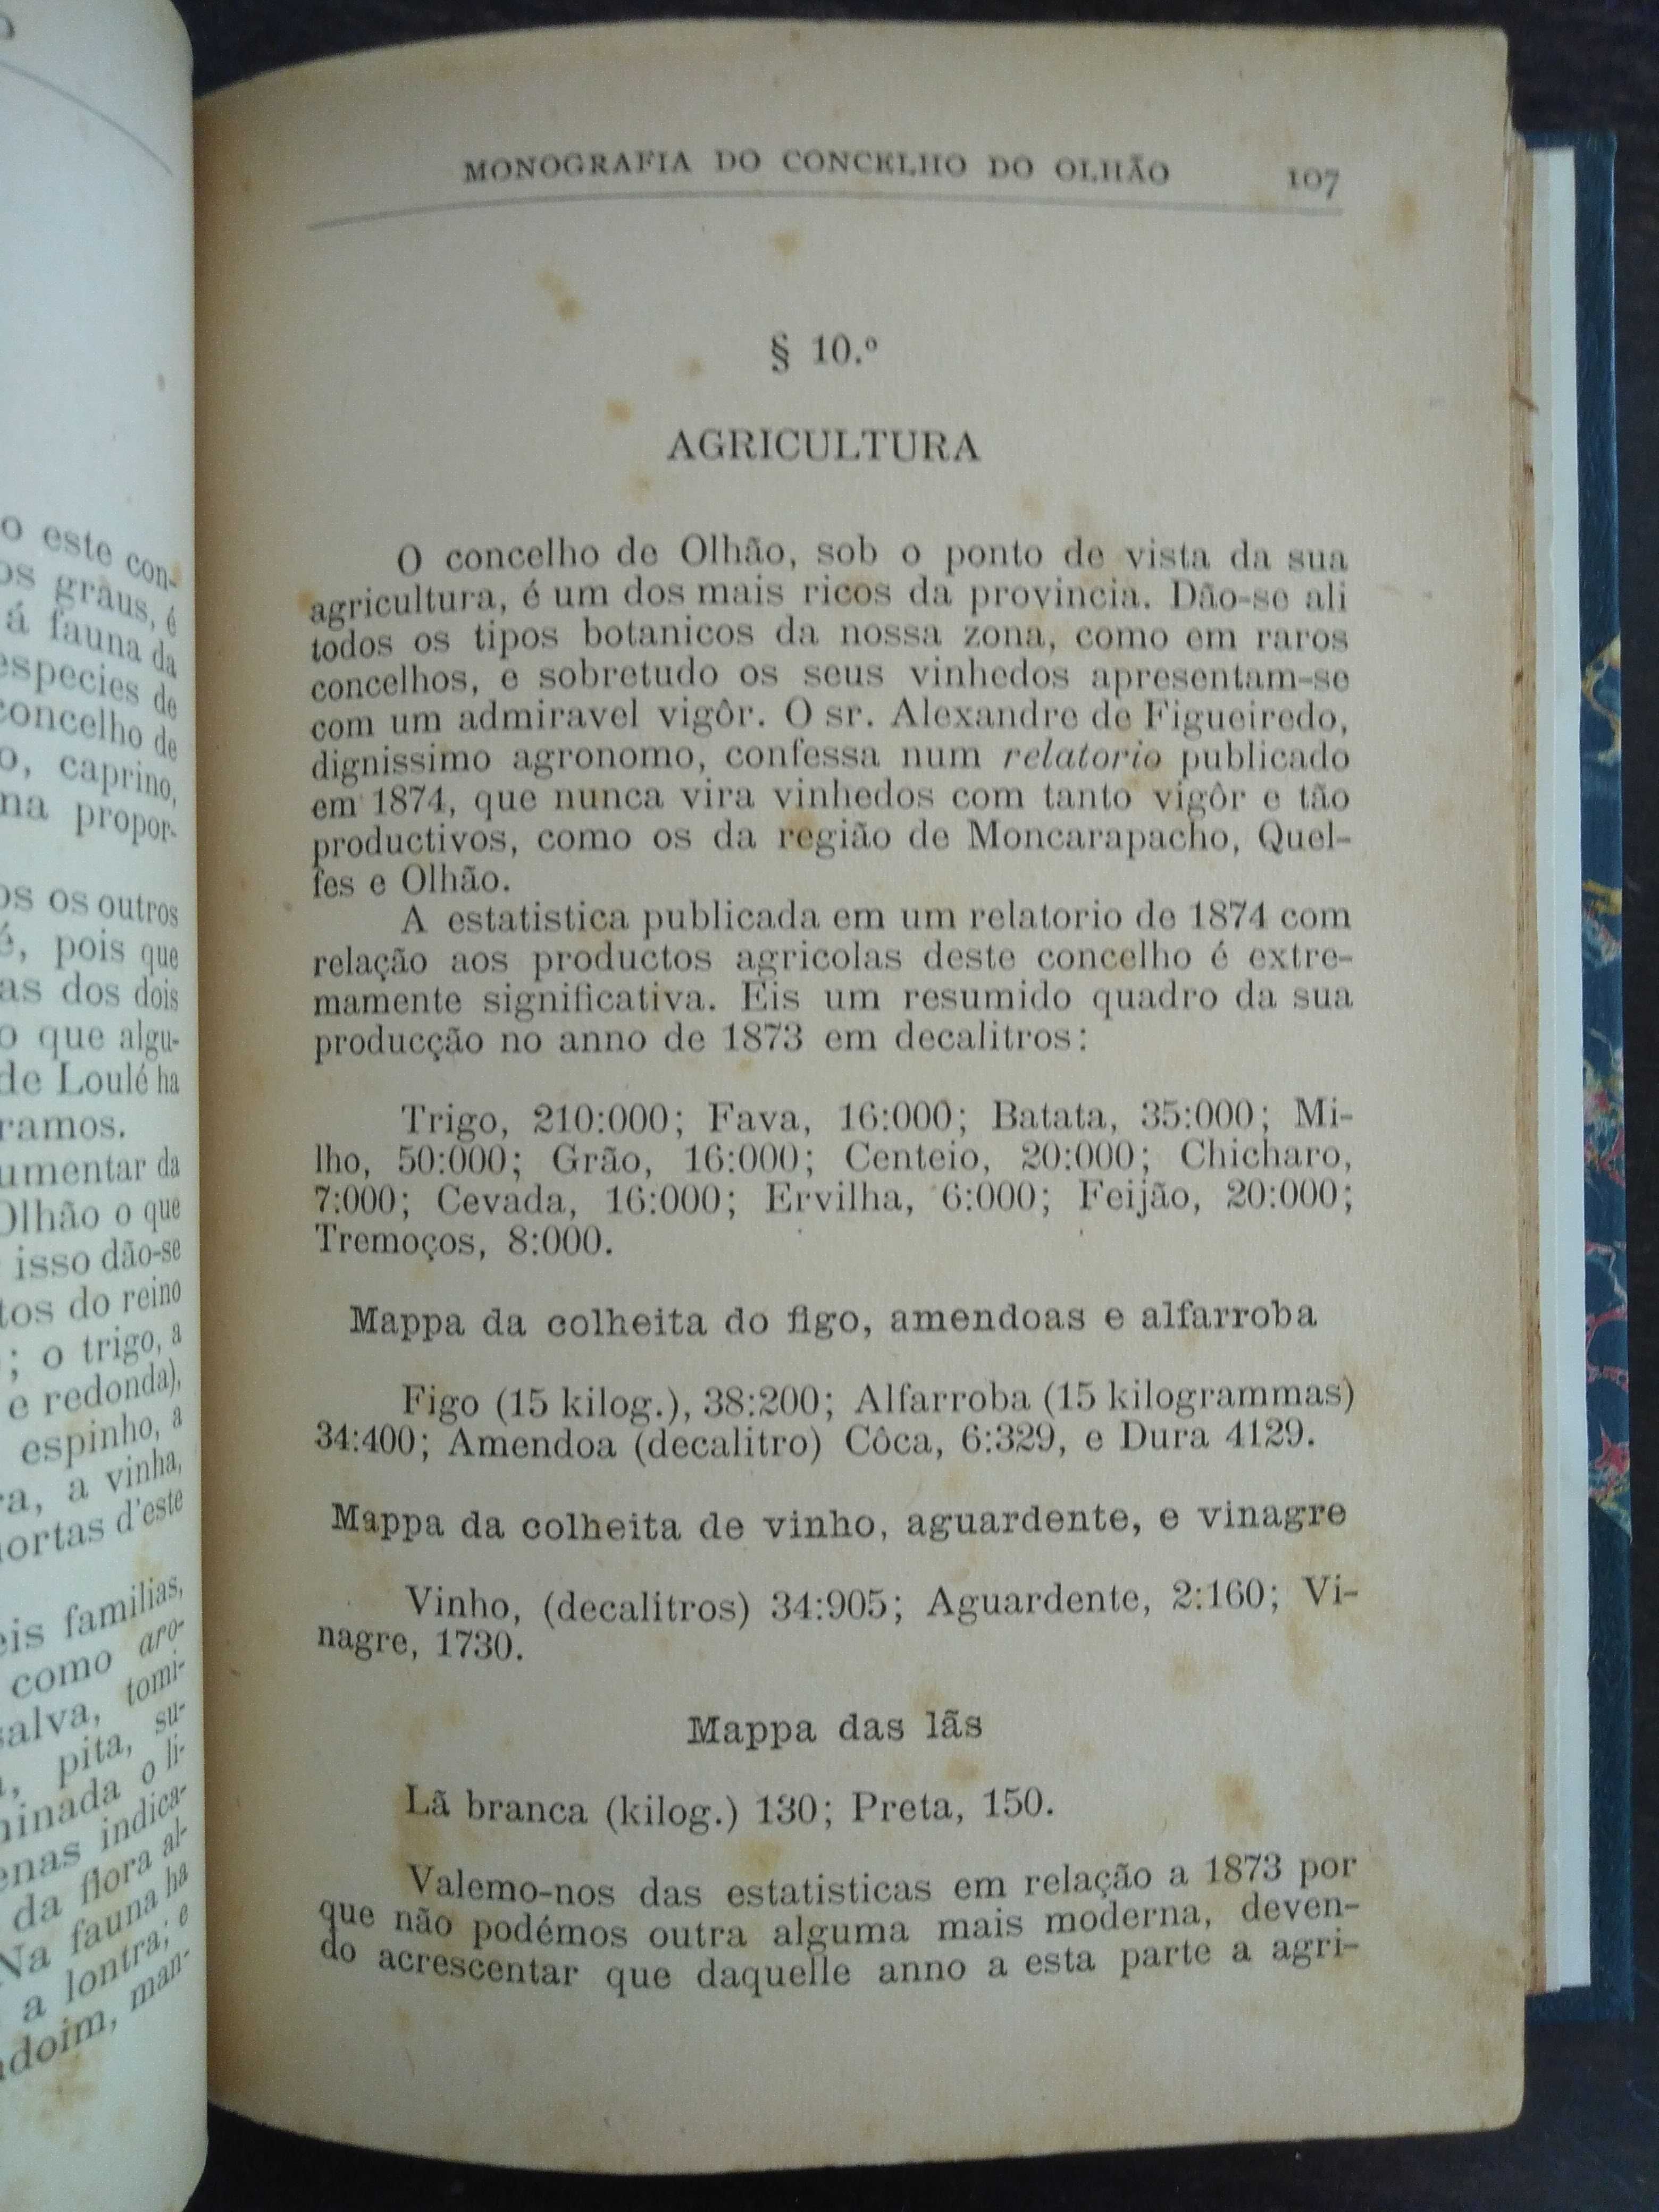 livro: A. Oliveira "Monografia do concelho de Olhão da Restauração"